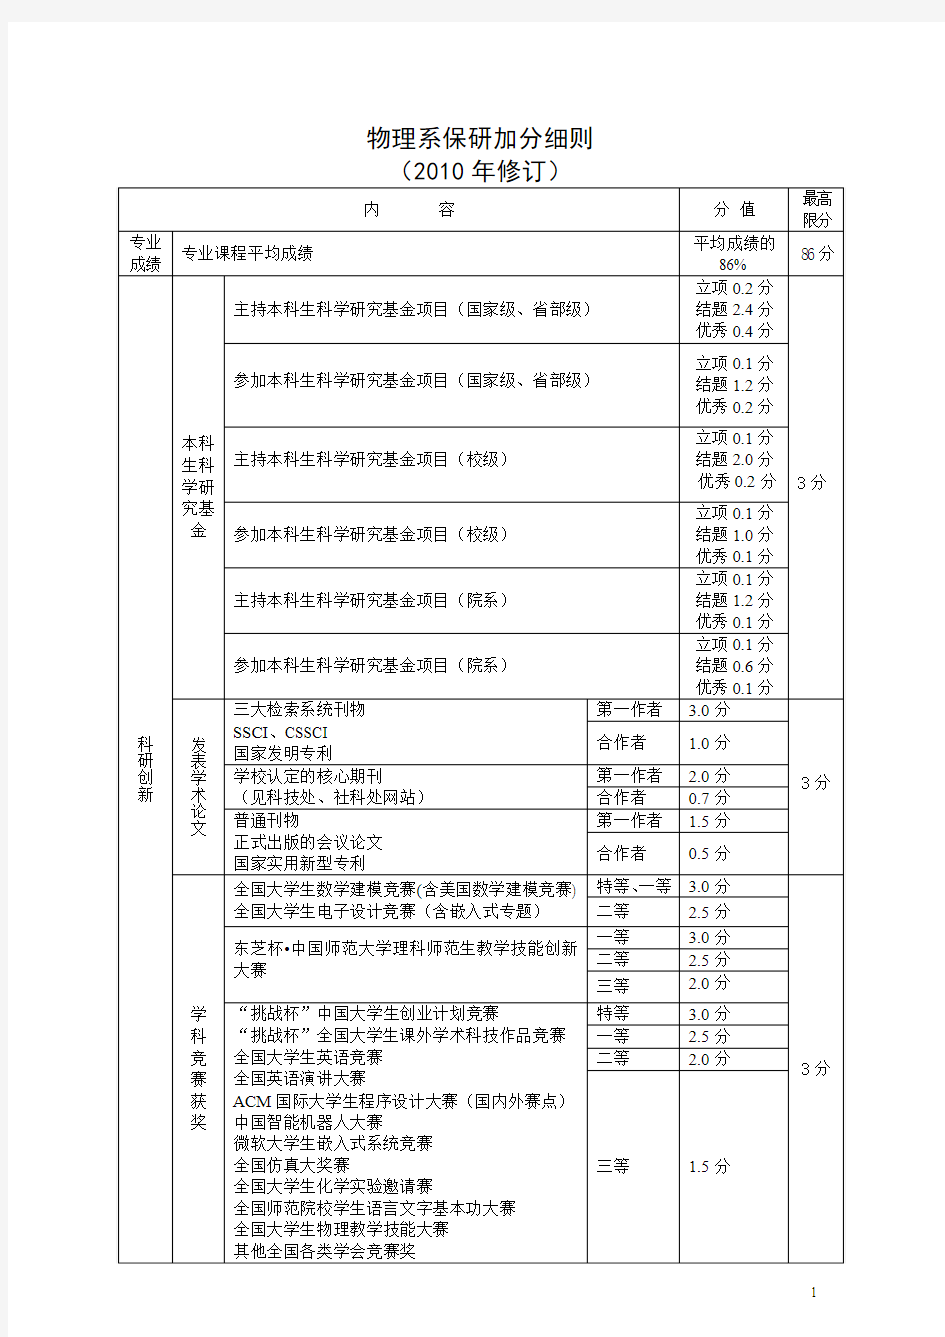 北京师范大学物理系保研加分细则(2010年修订)